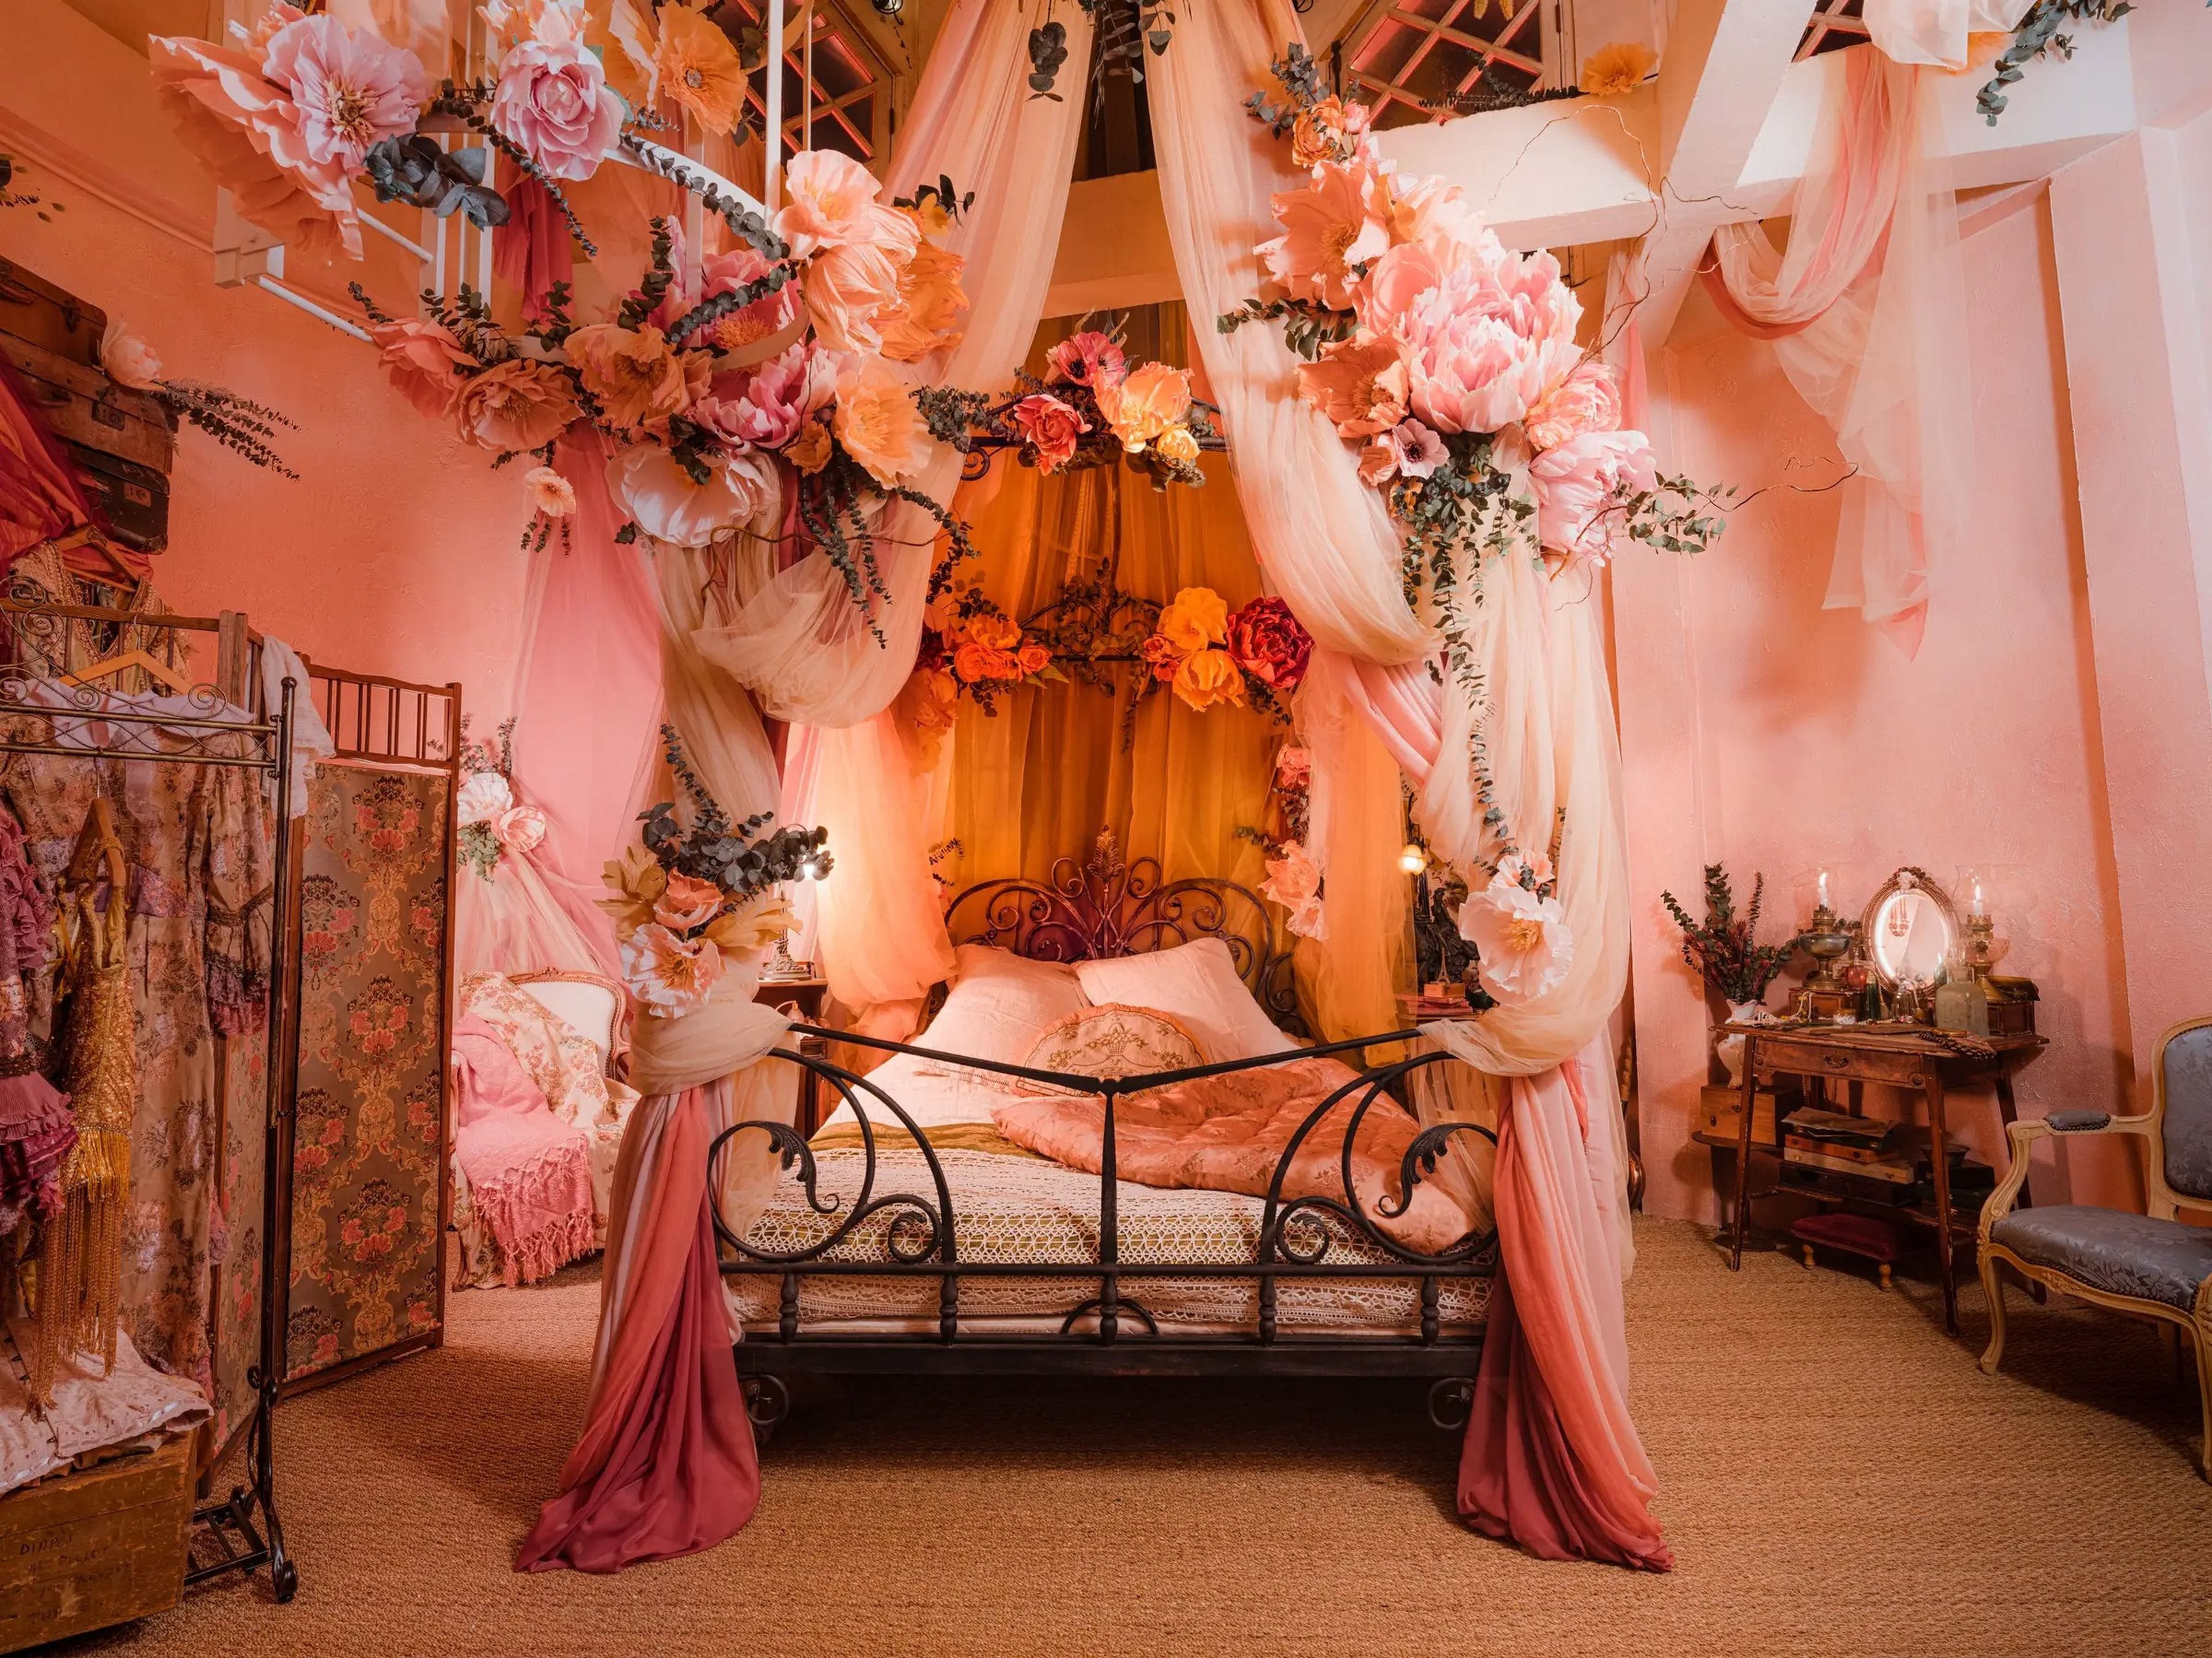 La habitación se ha decorado inspirada en la Belle Époque, que recuerda la época del cabaret.